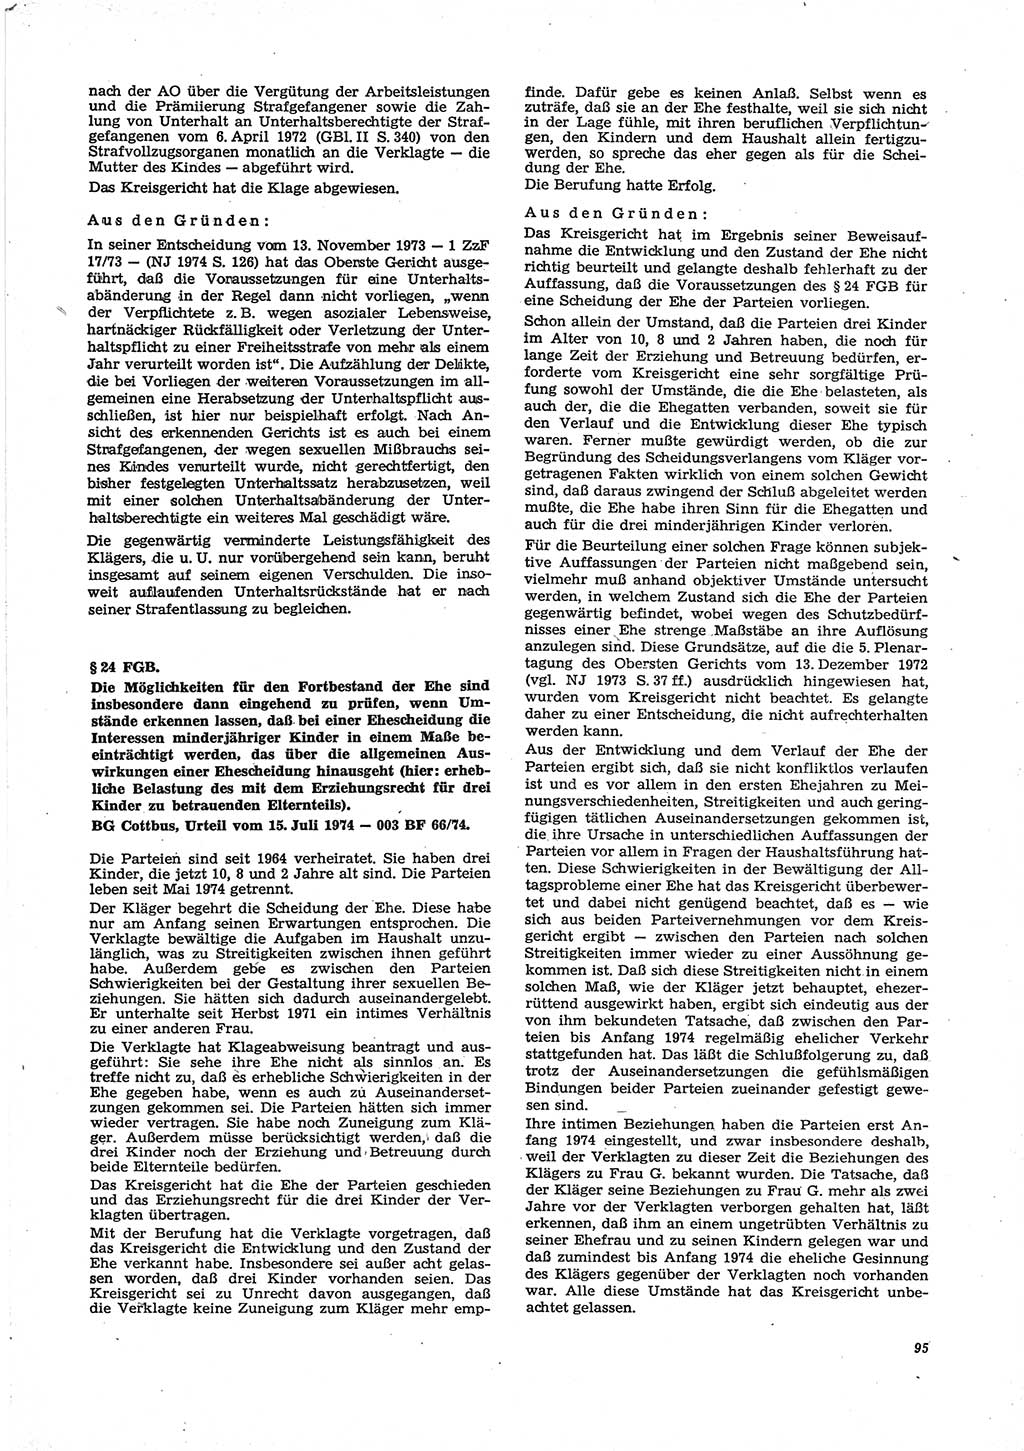 Neue Justiz (NJ), Zeitschrift für Recht und Rechtswissenschaft [Deutsche Demokratische Republik (DDR)], 29. Jahrgang 1975, Seite 95 (NJ DDR 1975, S. 95)